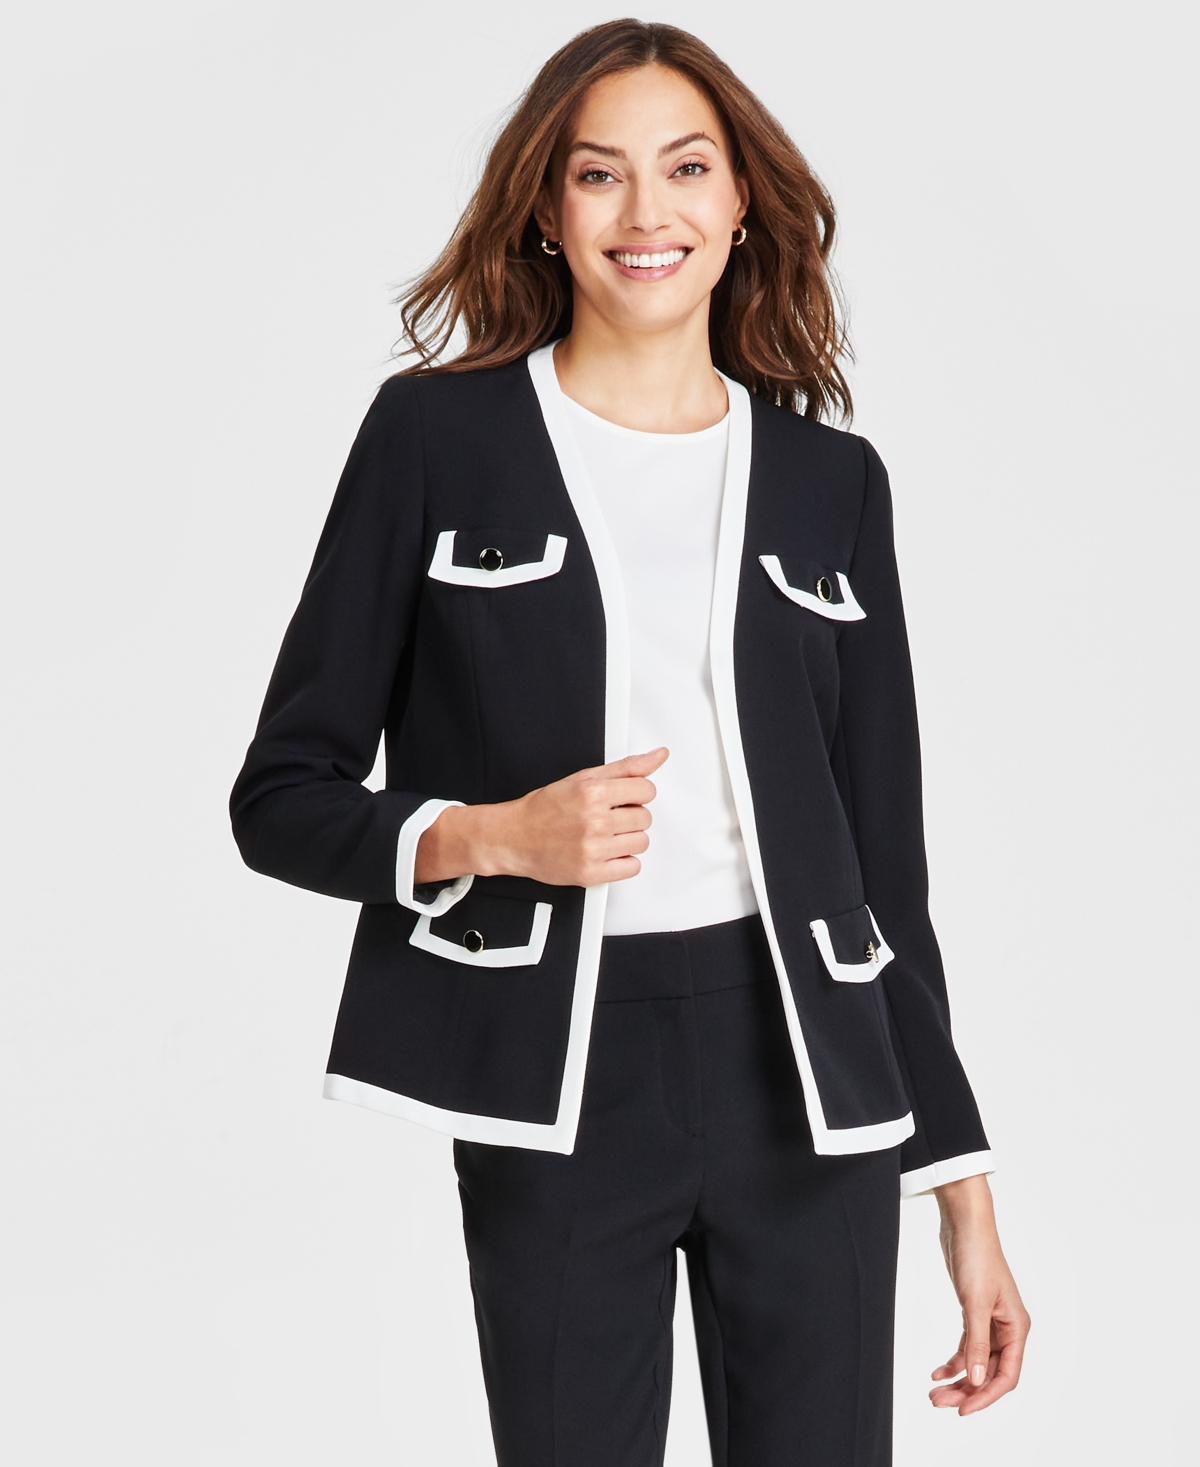 Women's Tipped Collarless Jacket - Black/White